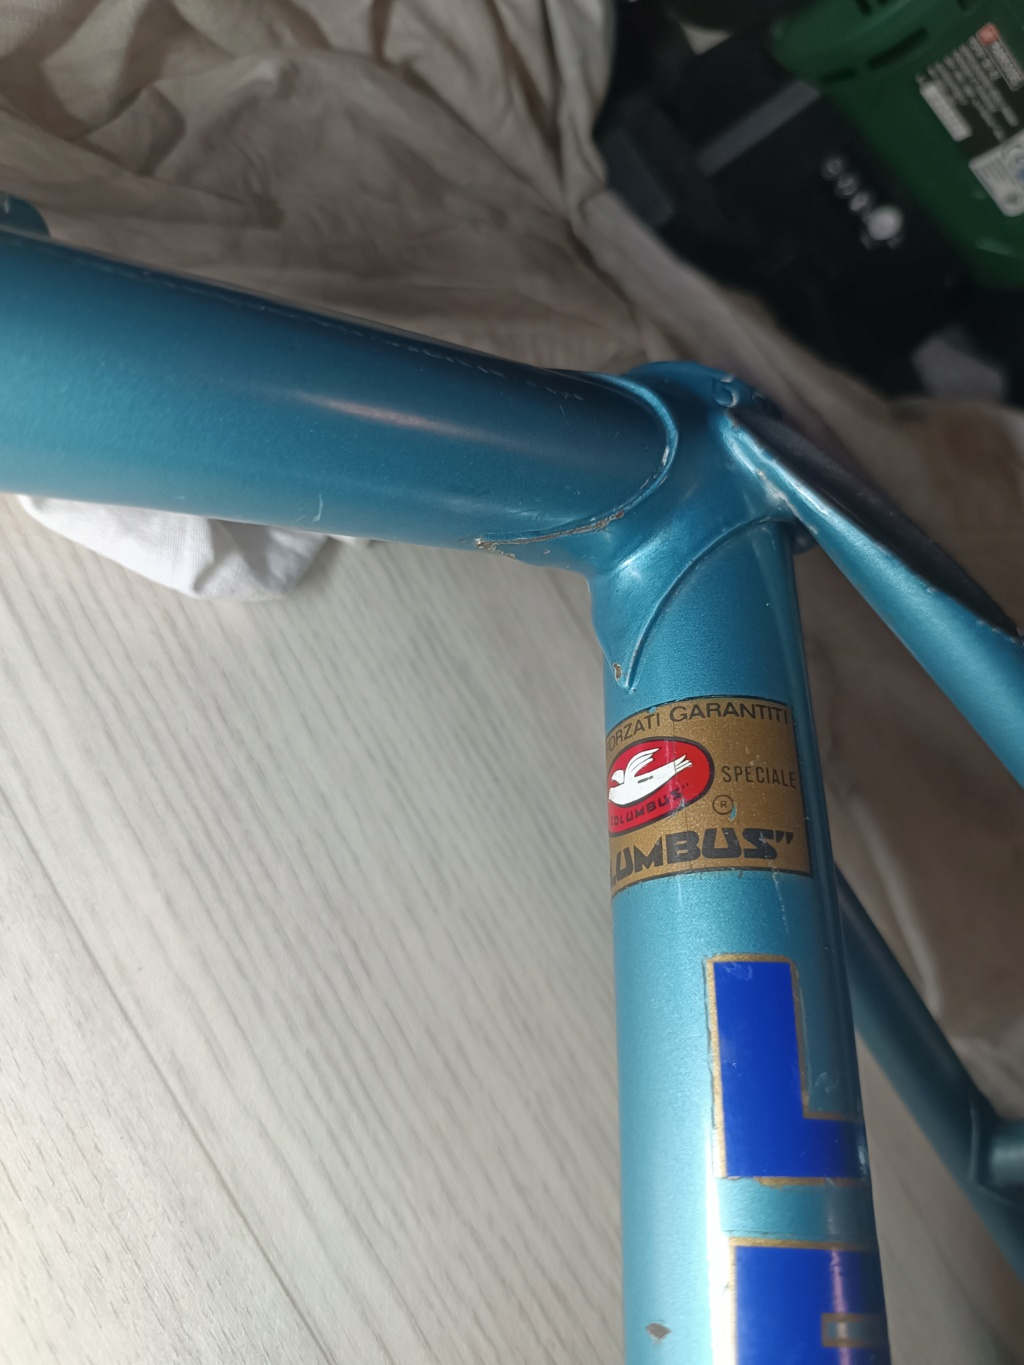 Vélo artisanal bleu en Columbus monté en campa nuovo / super record (restauration terminée) Img_2556